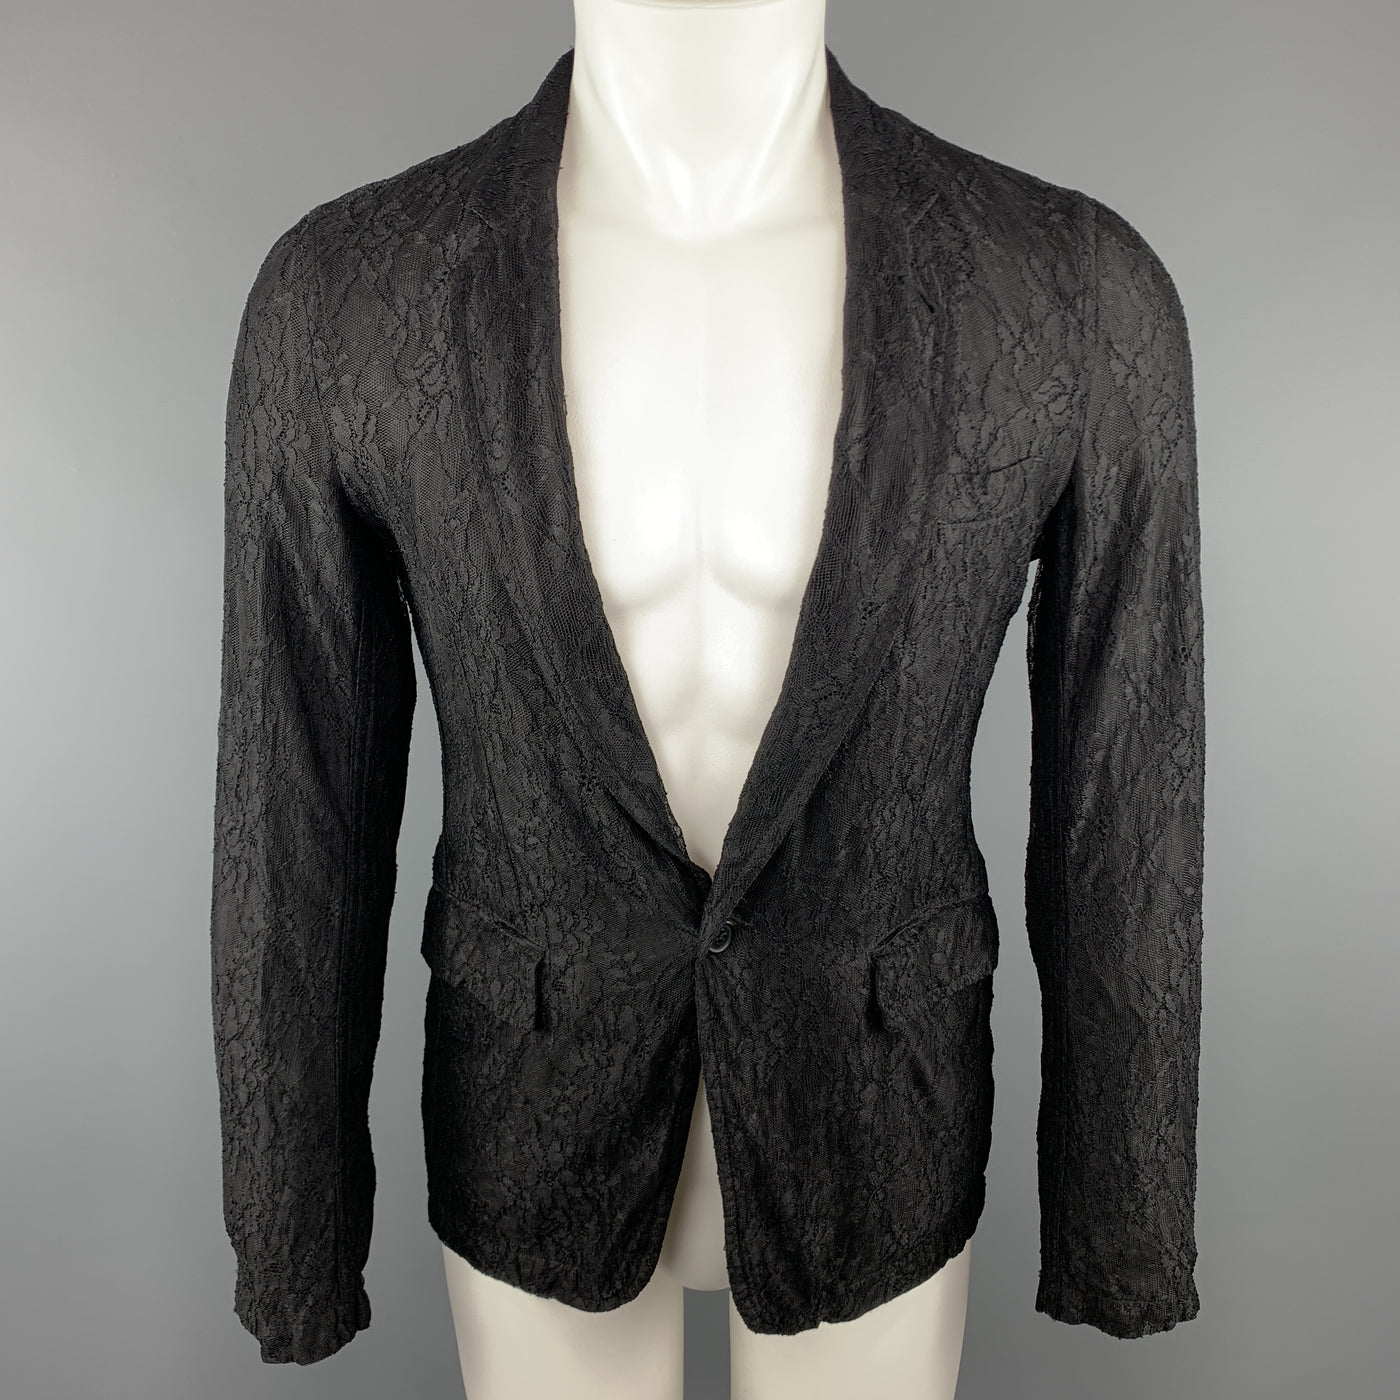 COMME des GARCONS HOMME PLUS S Black Lace Polyester / Rayon Notch Lapel Jacket